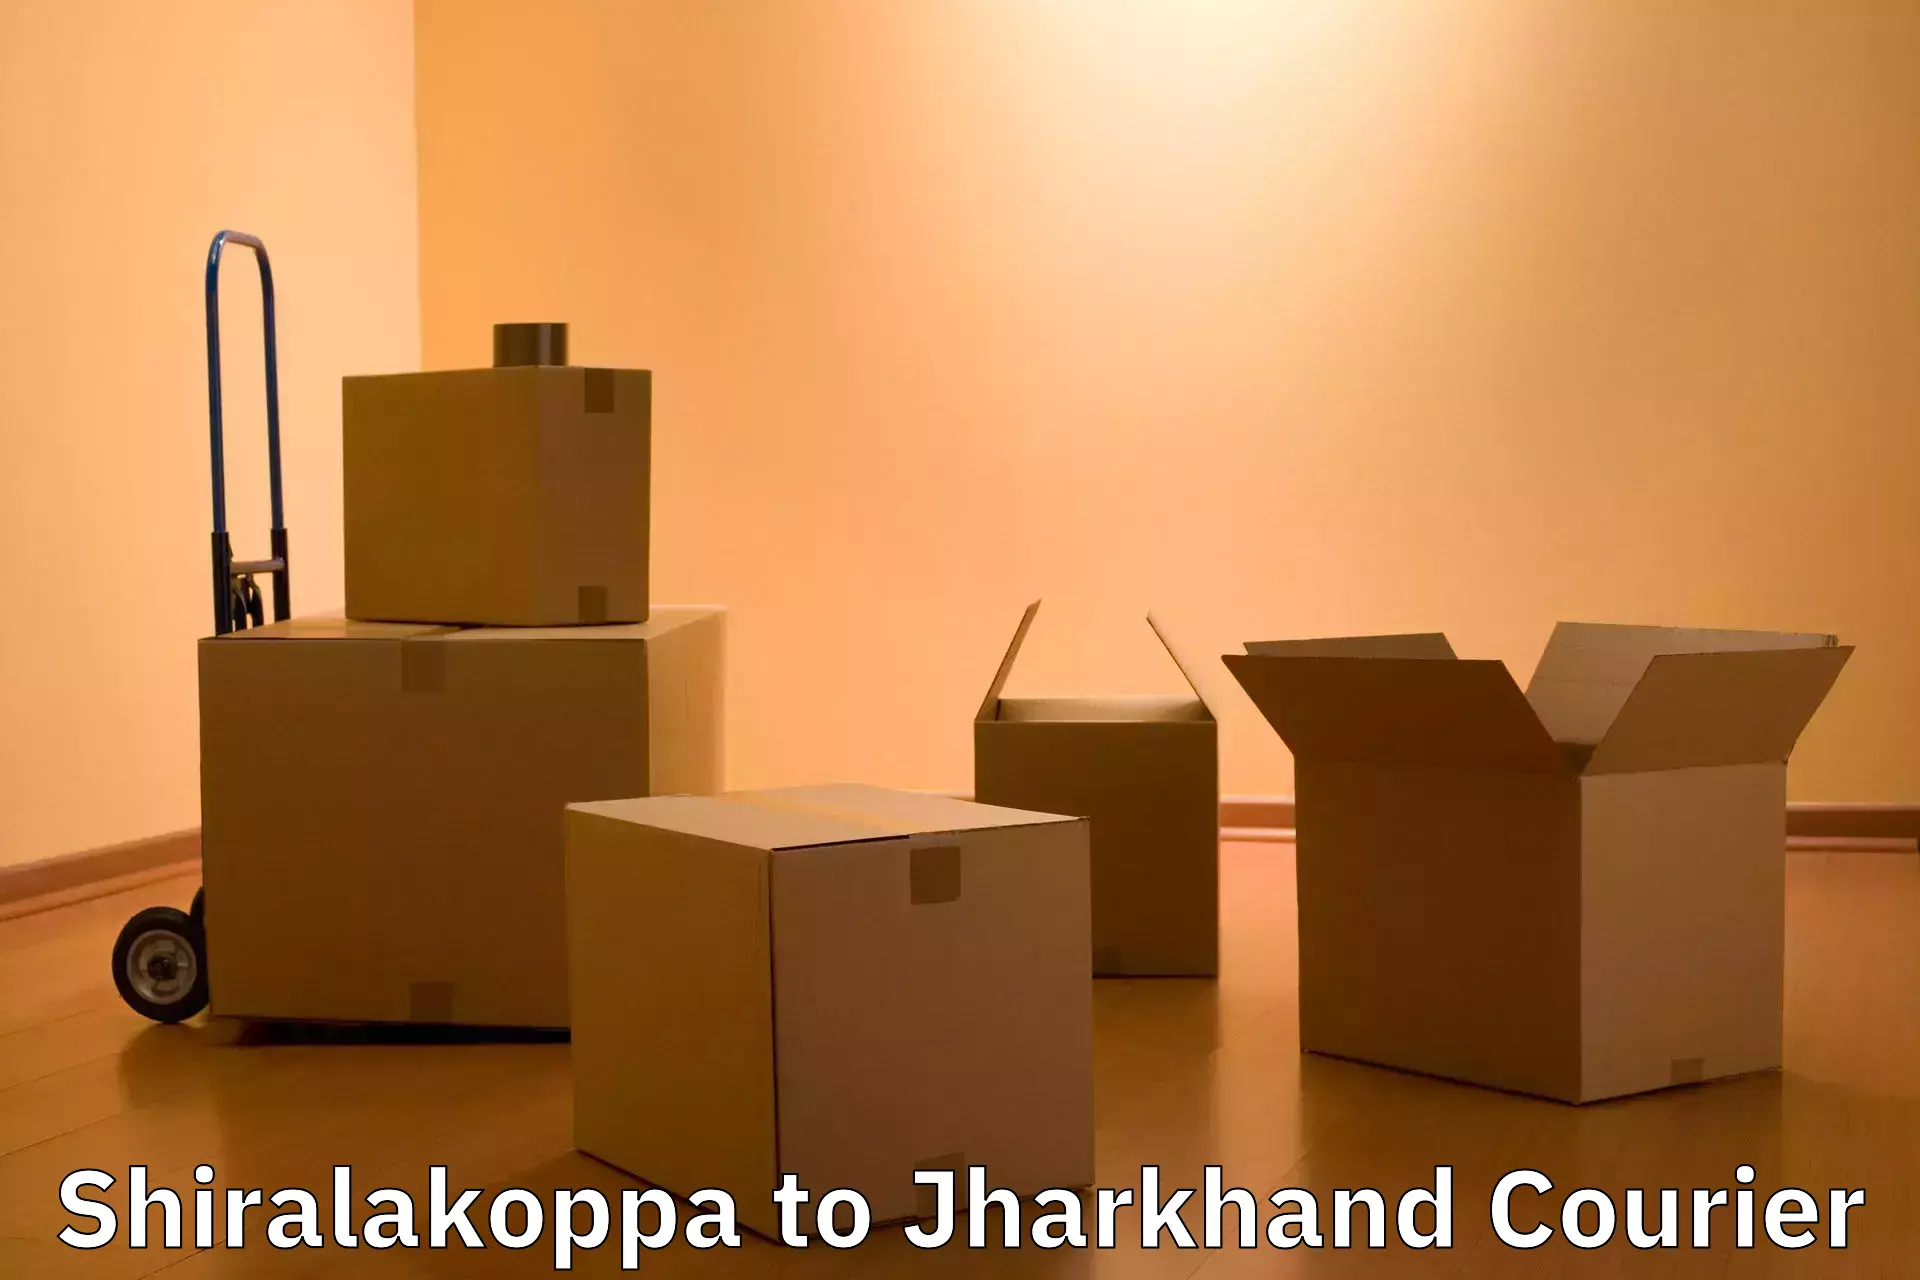 Luggage transport company Shiralakoppa to Jharkhand